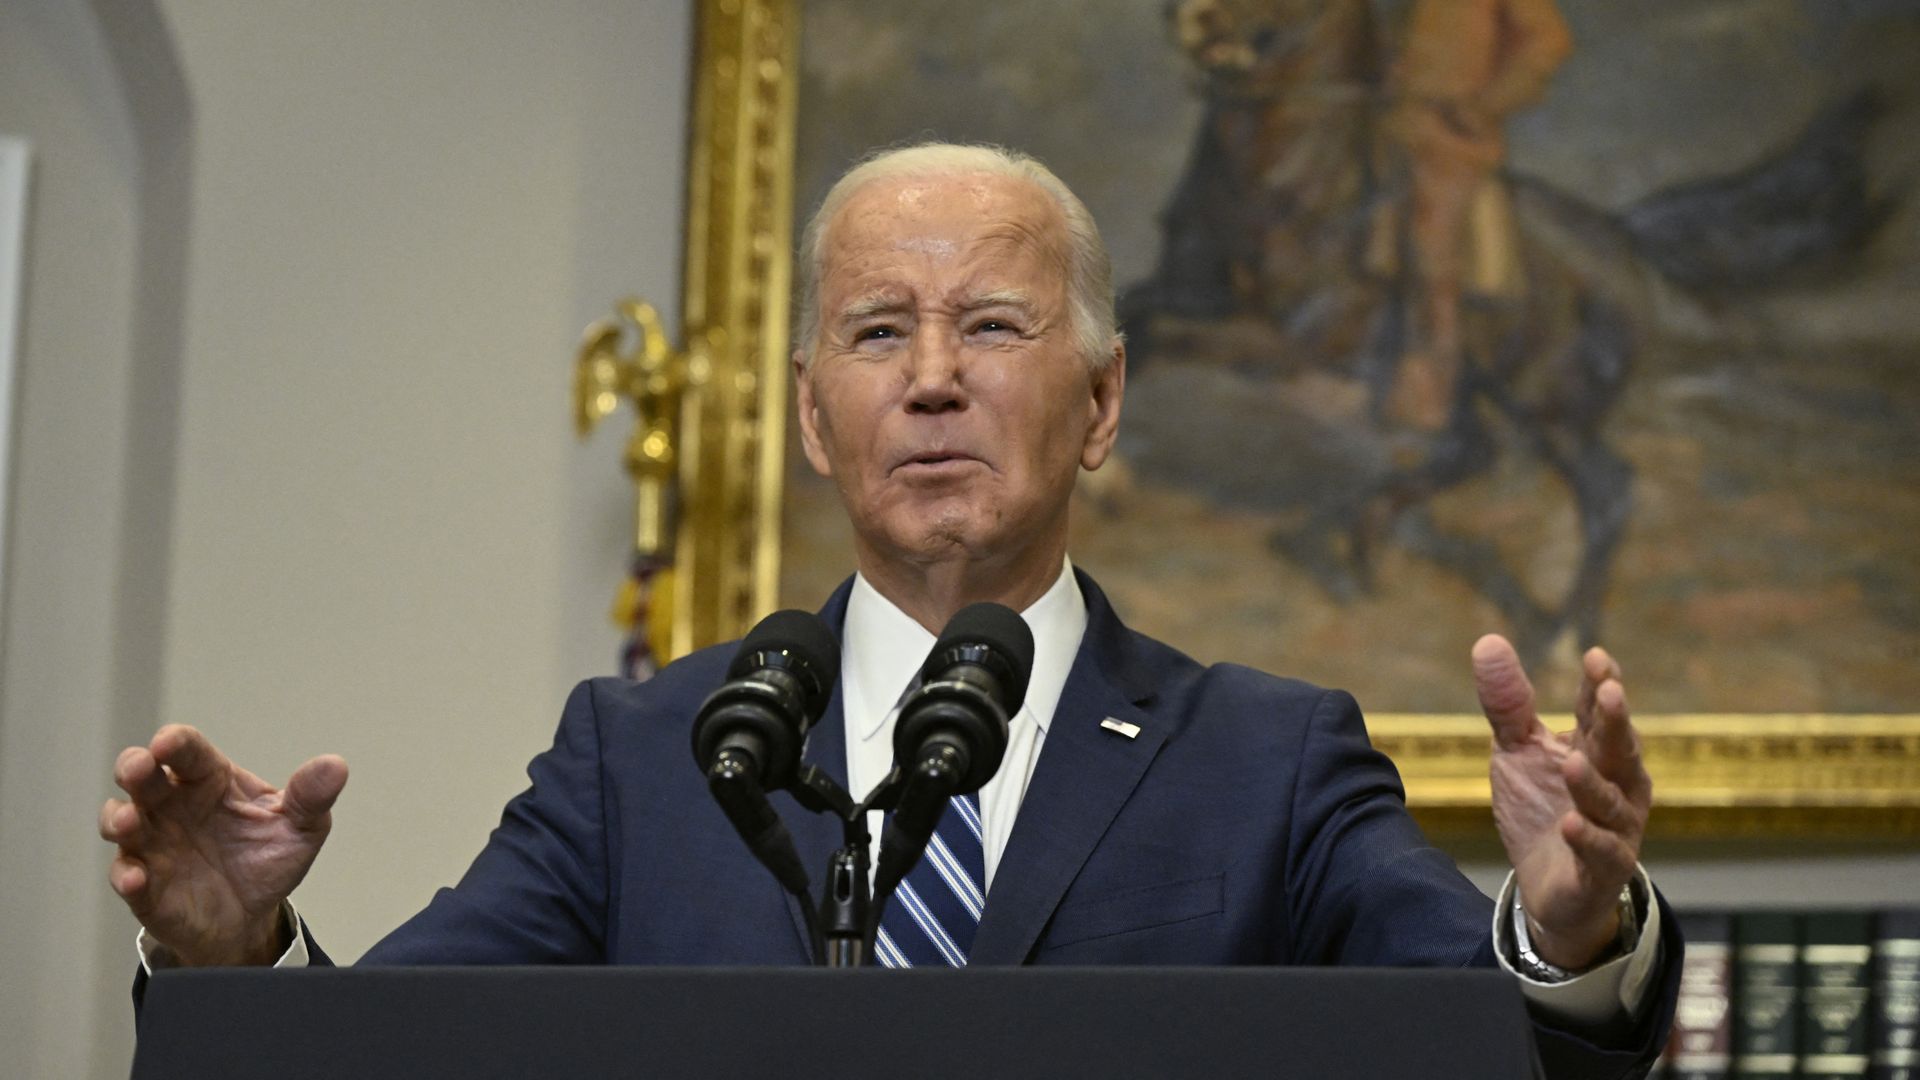 President Biden speaking in the White House on Feb. 16.